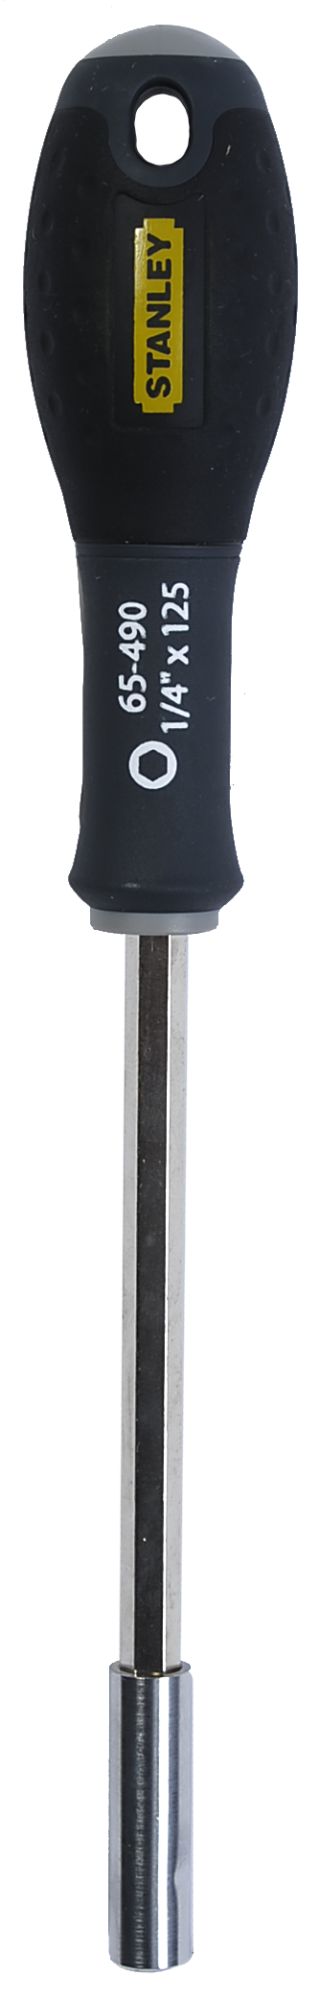 Adaptador FatMax®  X 125 mm SBD-0-65-490 | DESTORNILLADORES